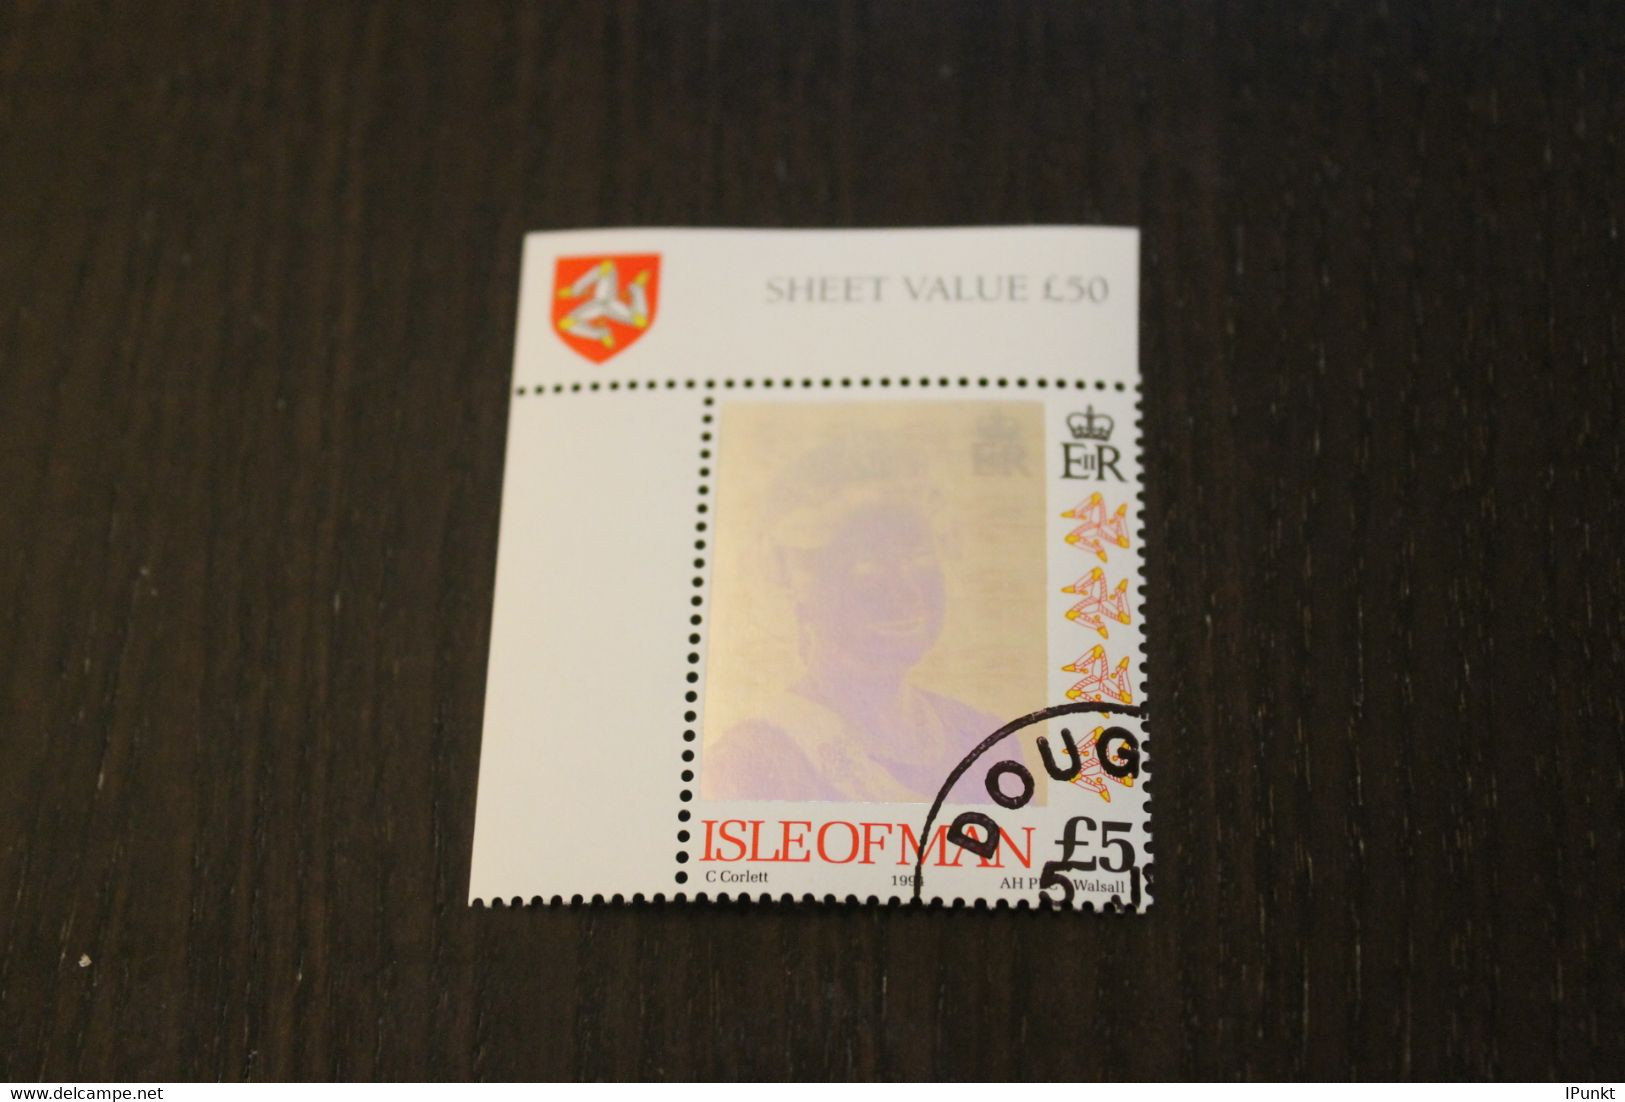 Hologrammmarke 1994, Isle Of Man, Königin Elisabeth II; 5 Pfund; Gestempelt - Hologramme